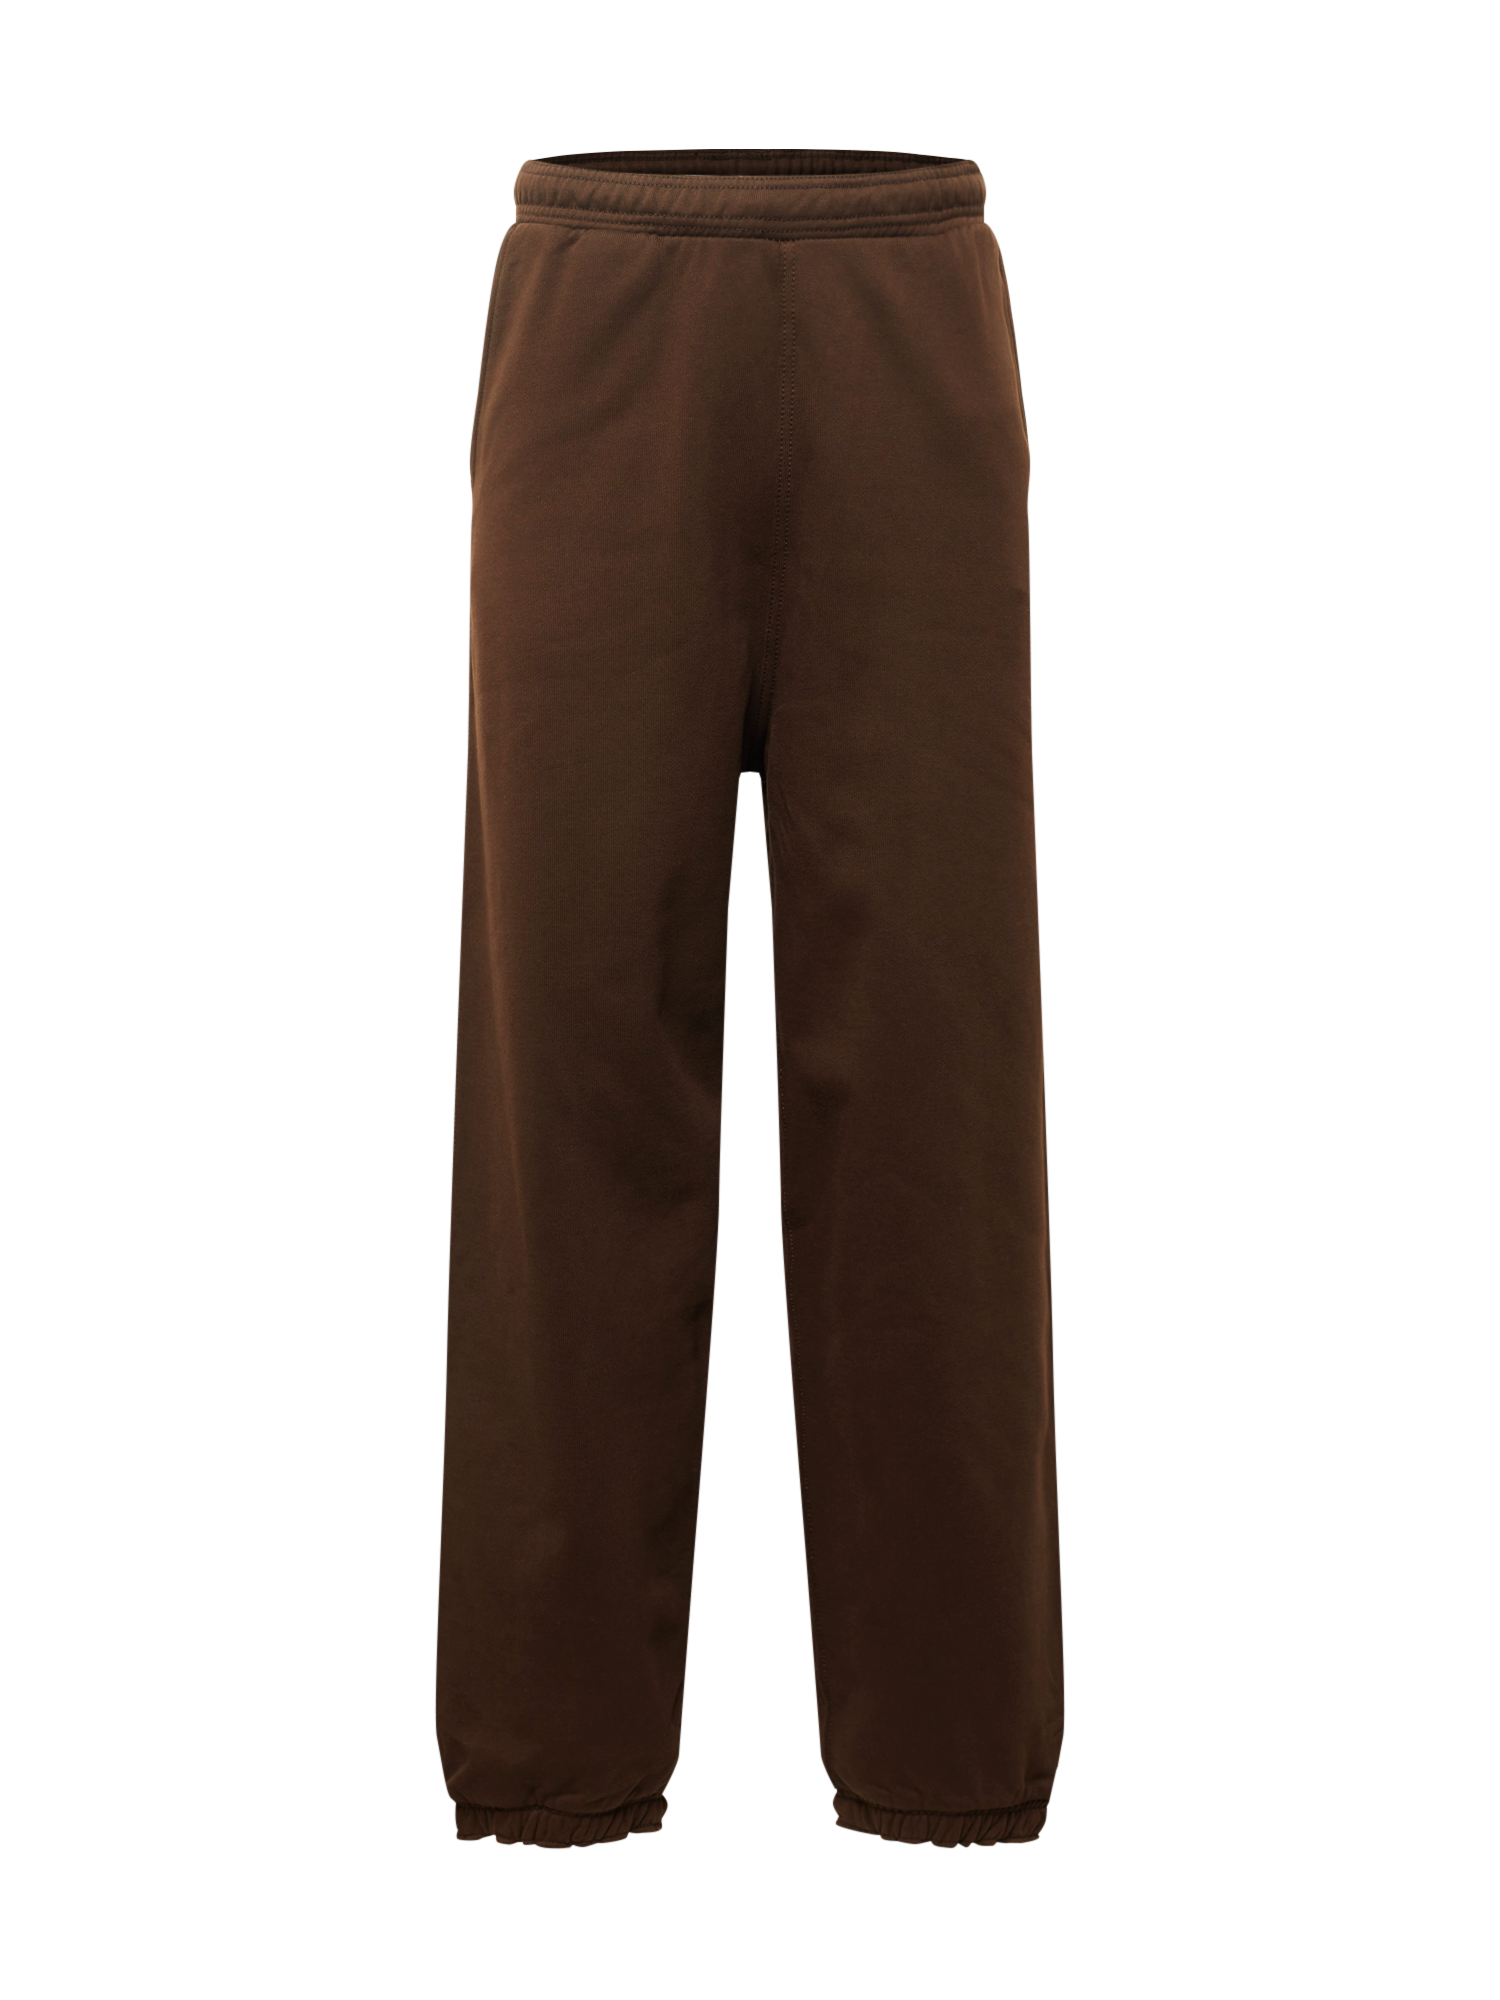 Bluzy iKRJf WEEKDAY Spodnie Ethan w kolorze Ciemnobrązowym 